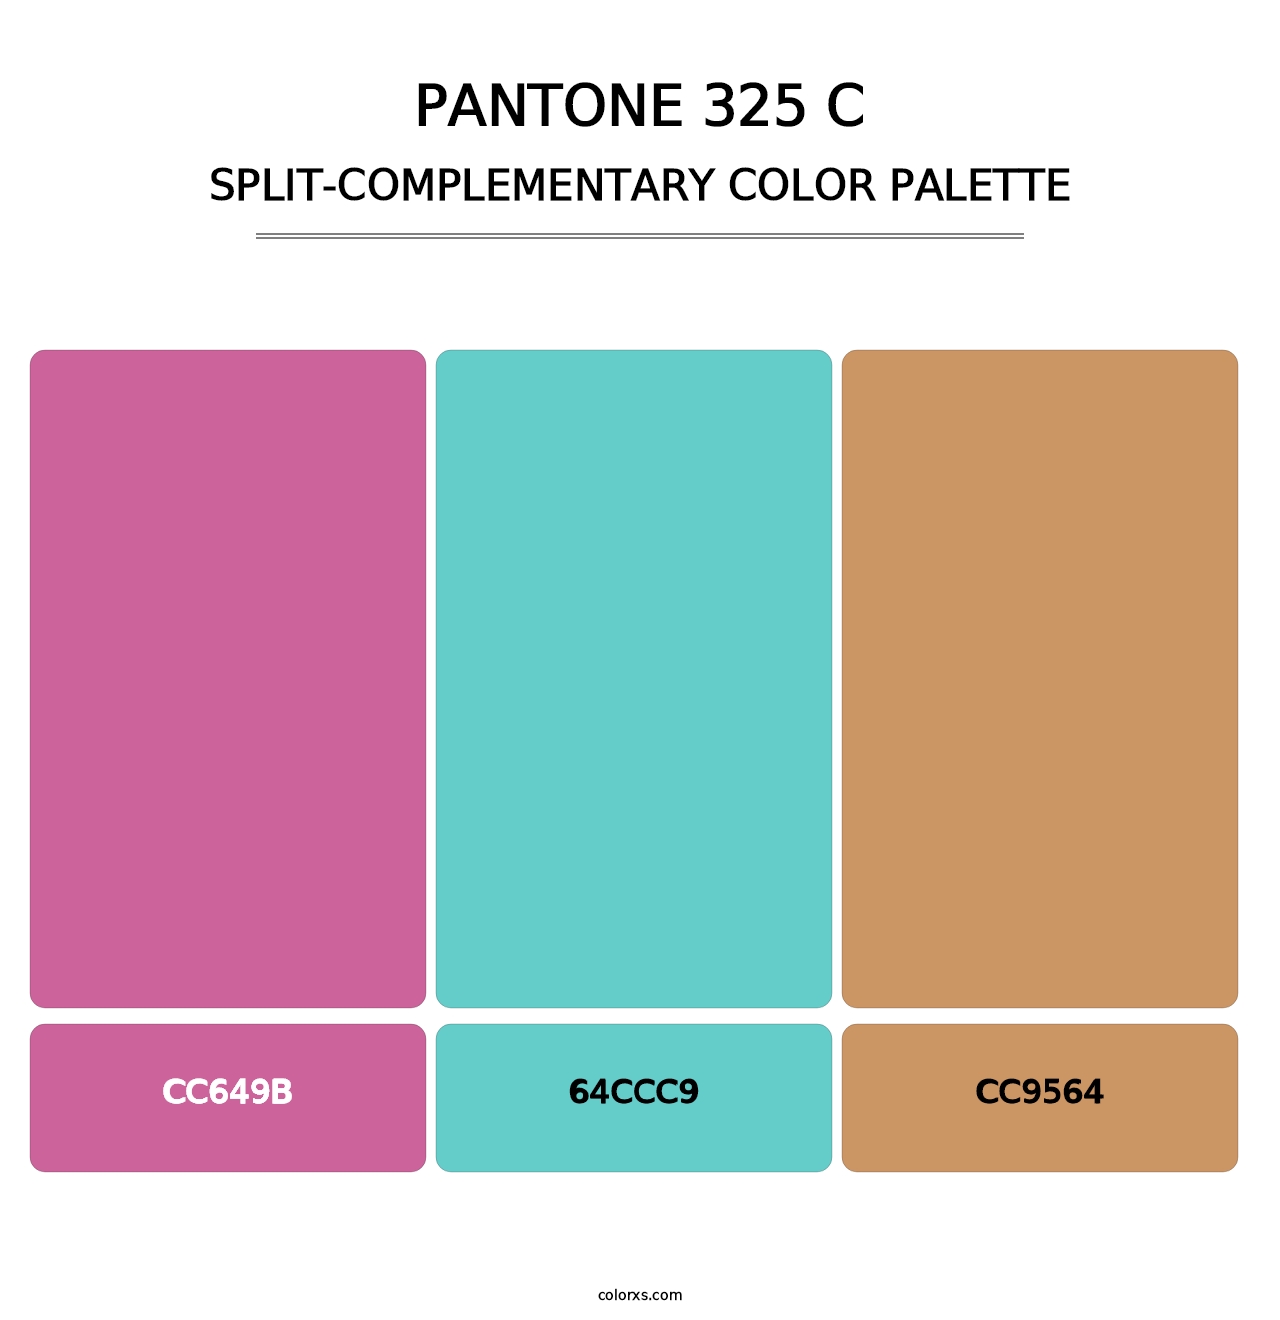 PANTONE 325 C - Split-Complementary Color Palette